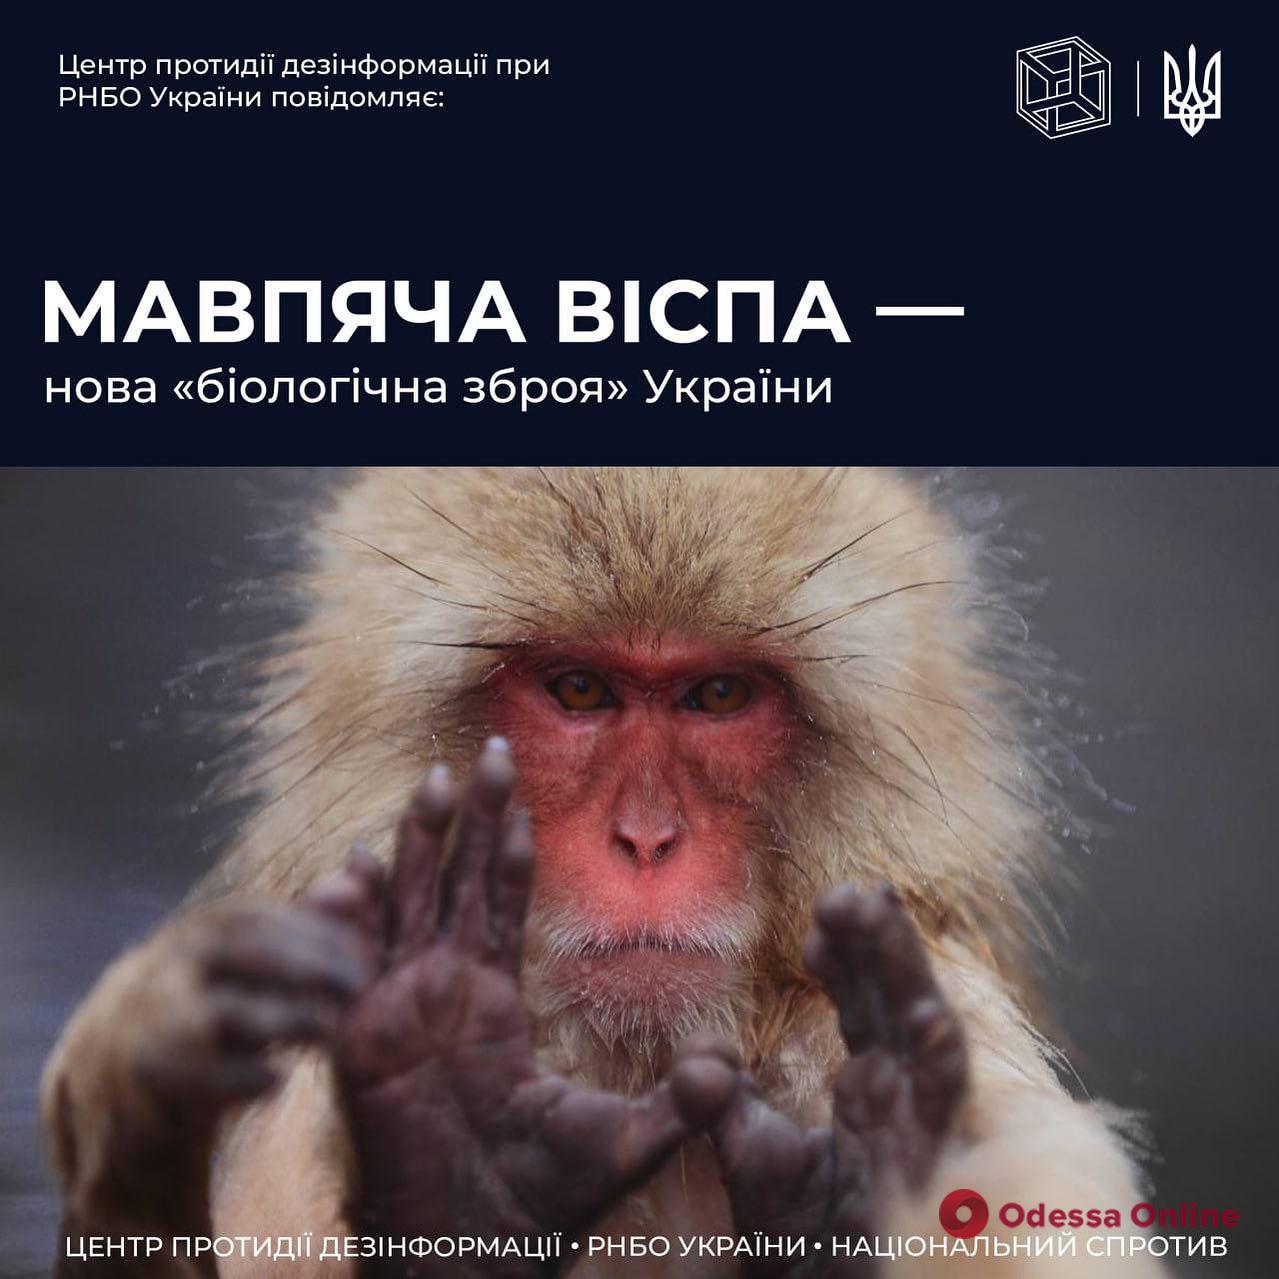 «Оспа обезьян пошла из украинских биолабораторий»: новый фейк от российских пропагандистов